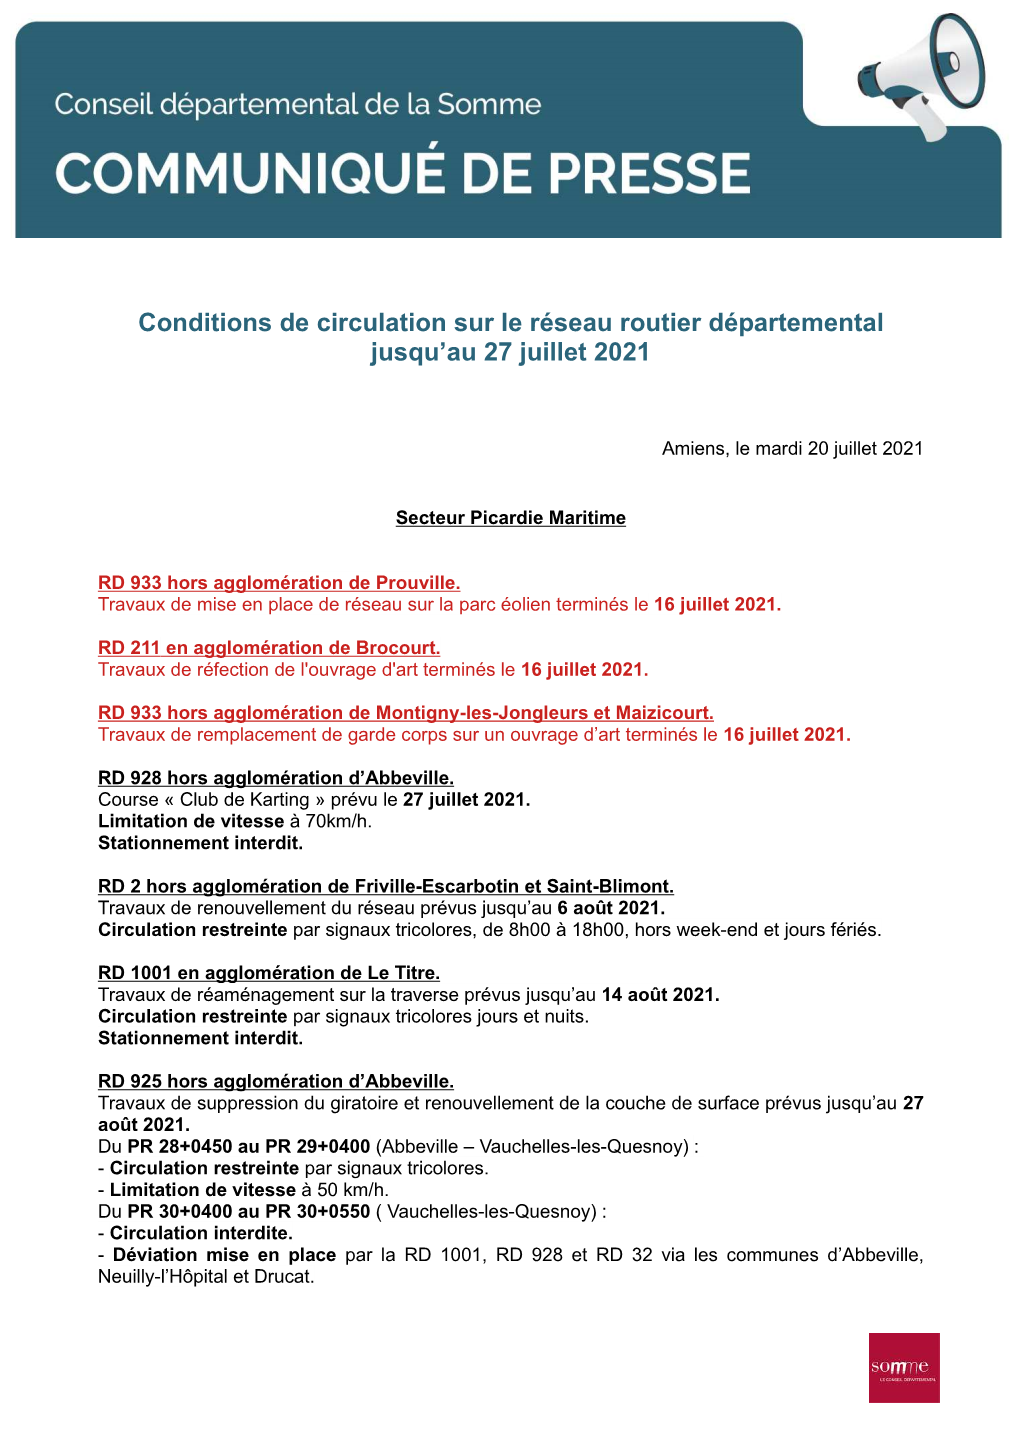 Conditions De Circulation Sur Le Réseau Routier Départemental Jusqu'au 27